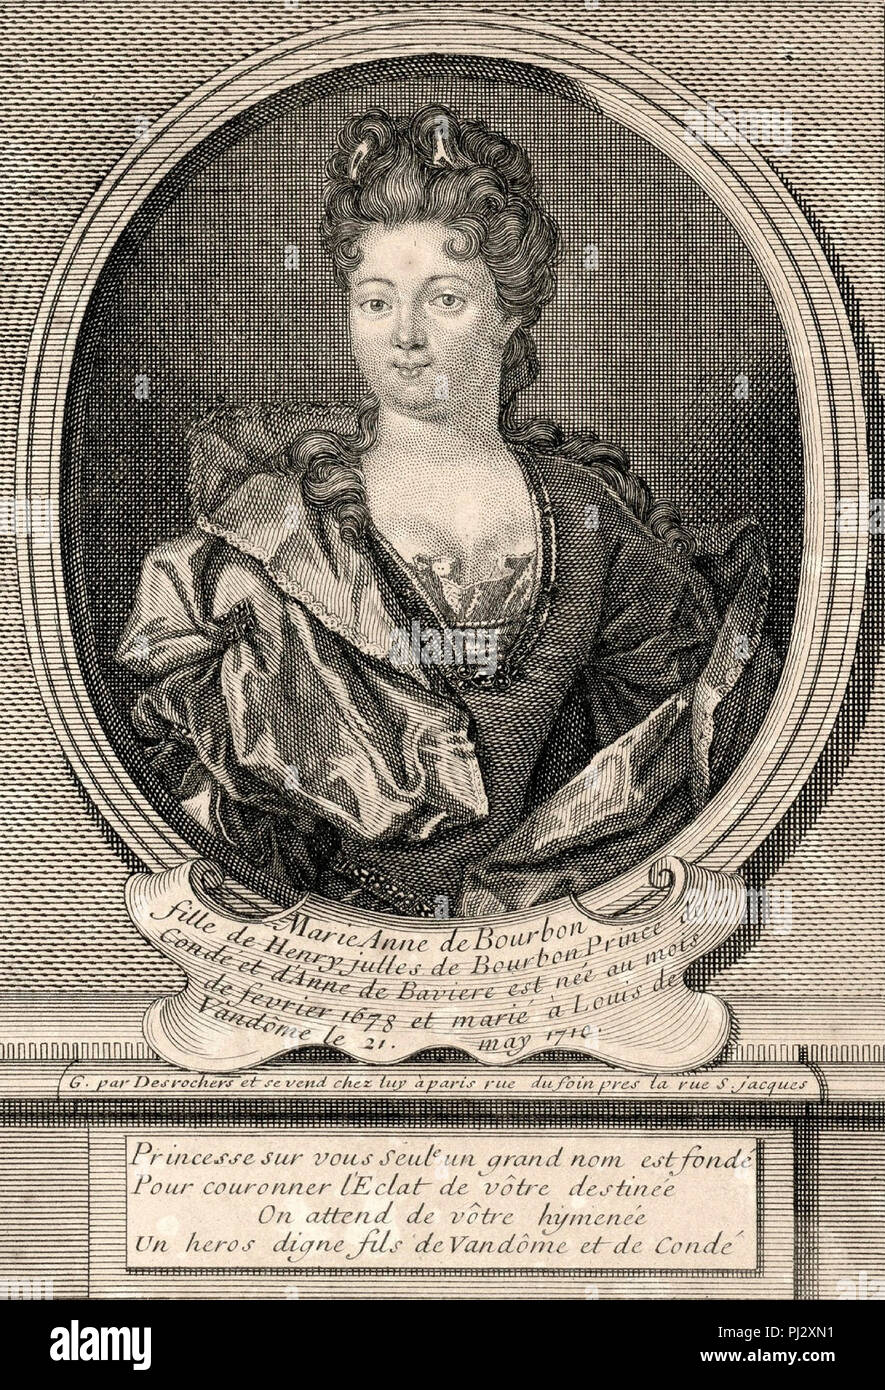 Ritratto di Marie Anne de Bourbon (1678-1718) come la duchessa di Vendôme; era una gran figlia di le Grand Condé - Étienne-Jehandier Desrochers, circa 1710 Foto Stock